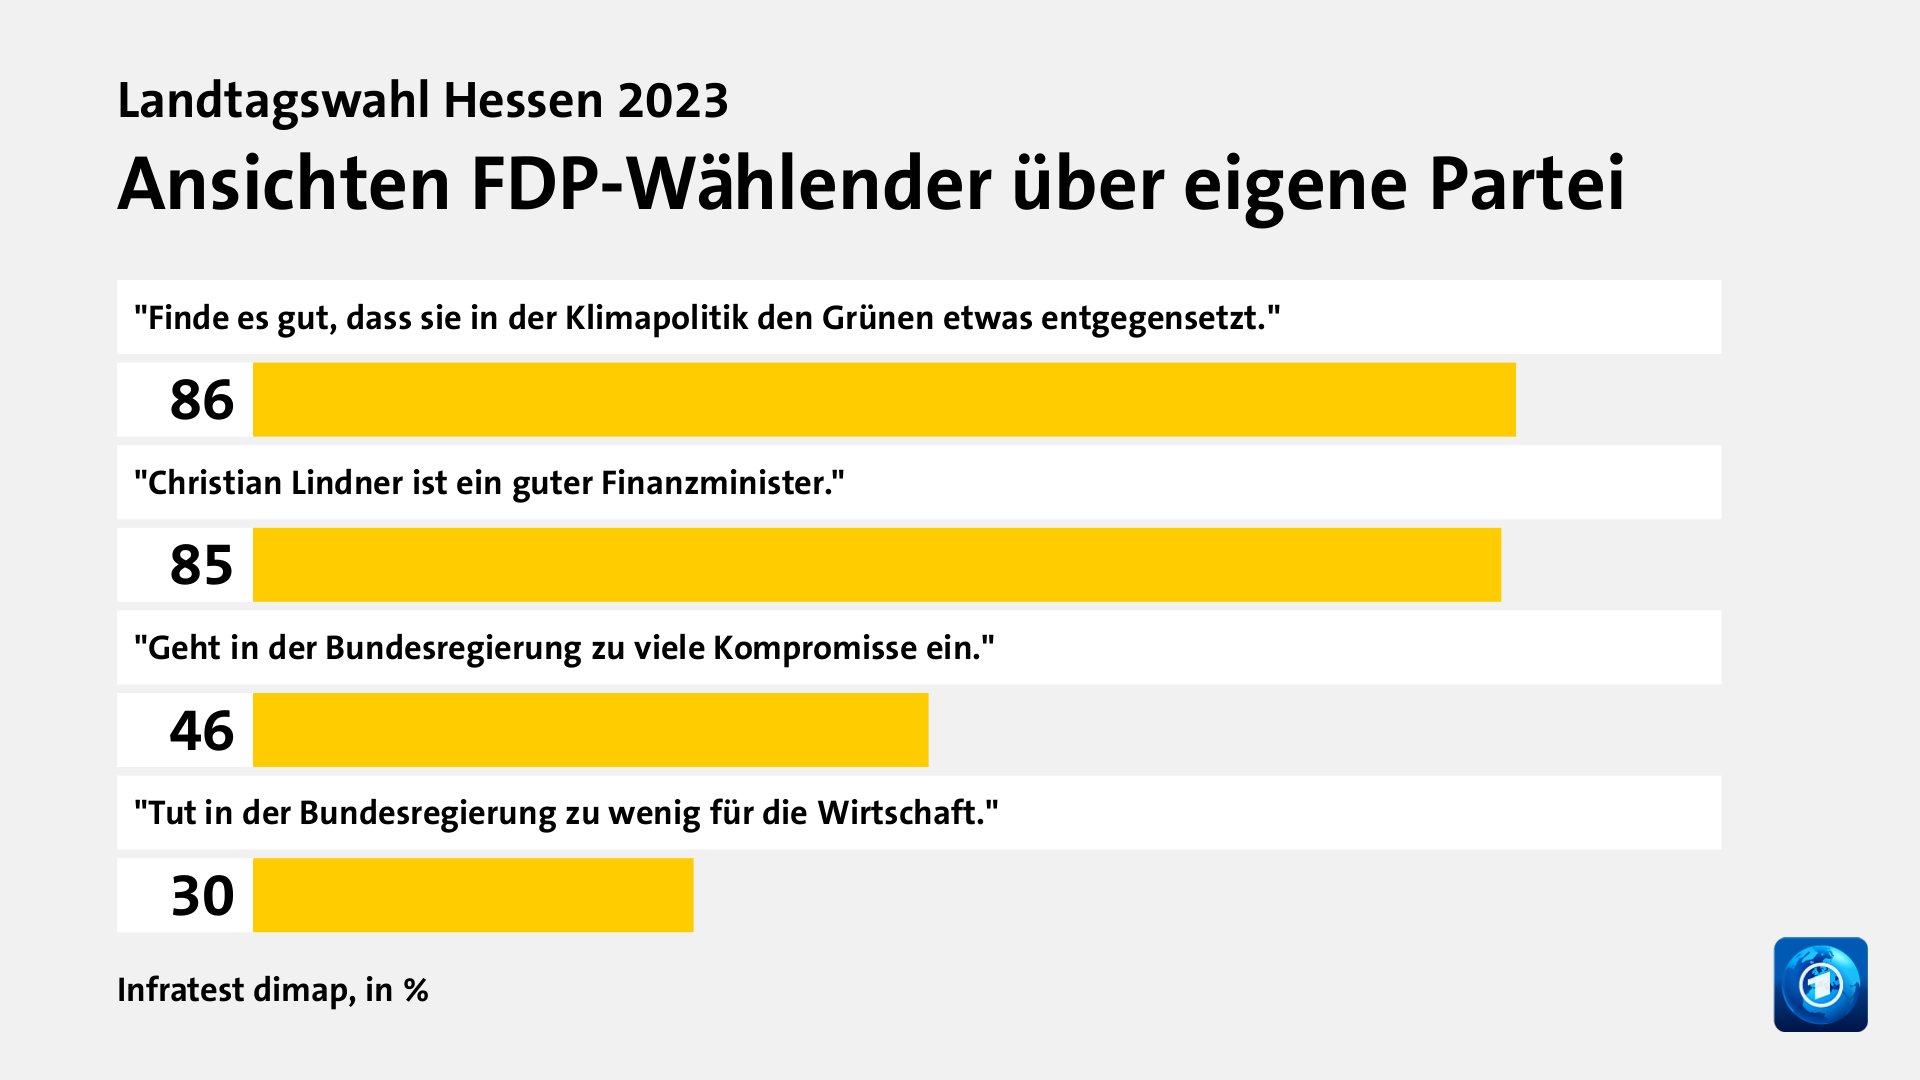 Ansichten FDP-Wählender über eigene Partei, in %: 